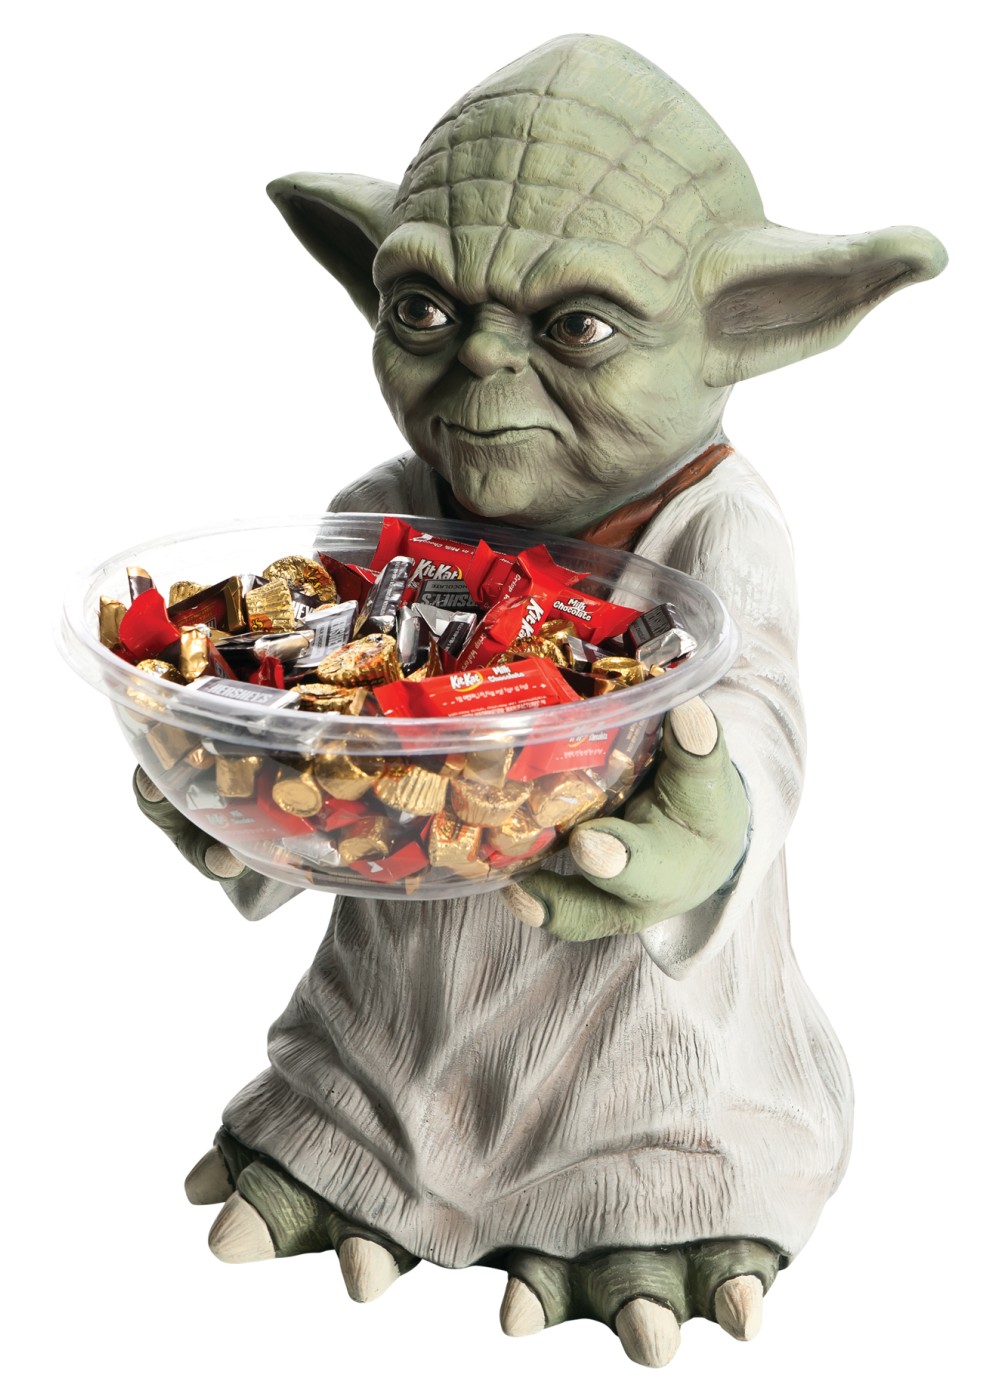 Star Wars Yoda Candy Bowl Holder